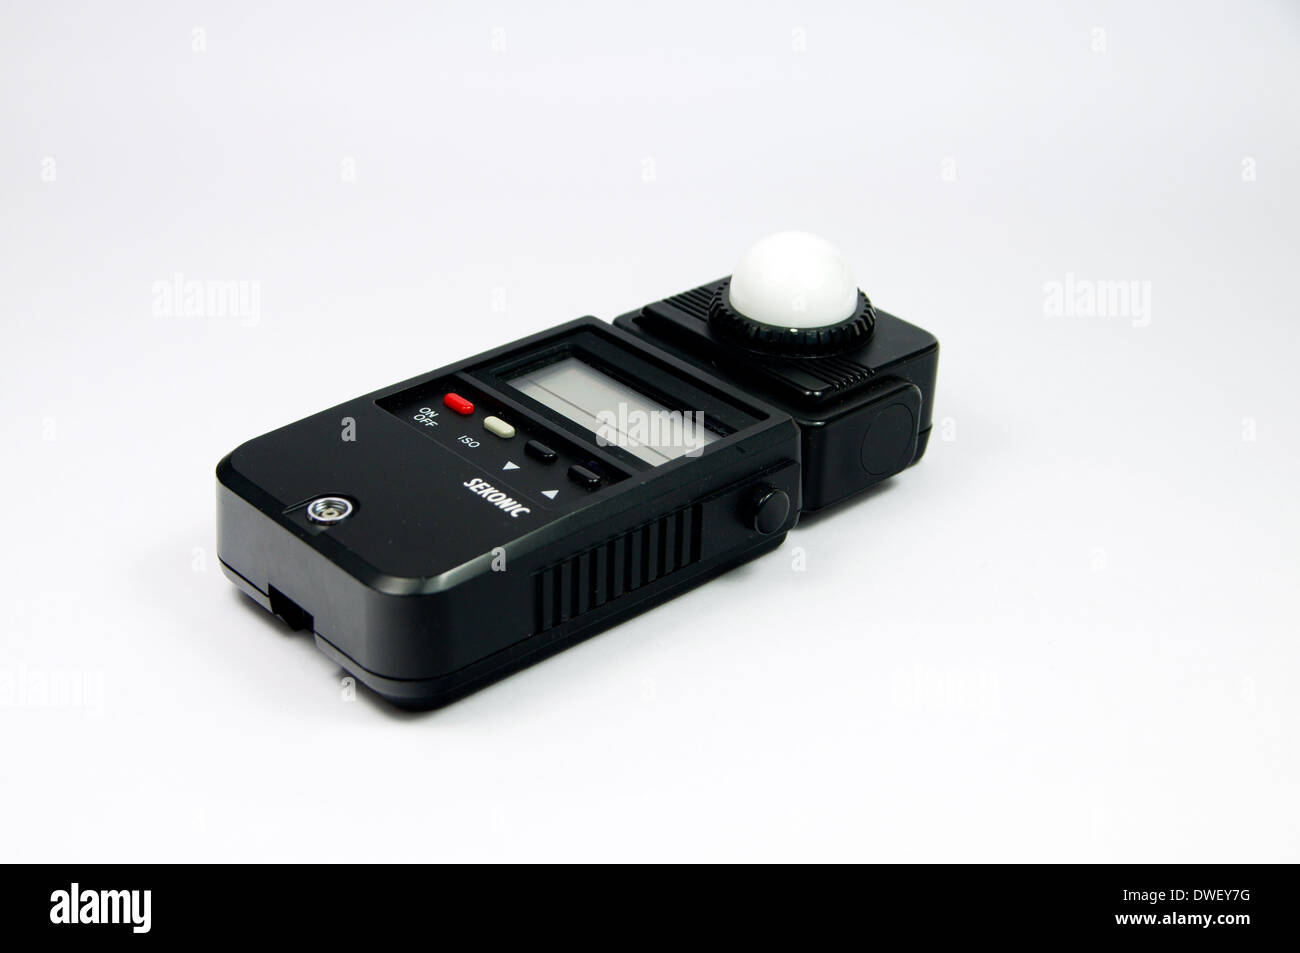 Sekonic digital Lightmeter. Stock Photo